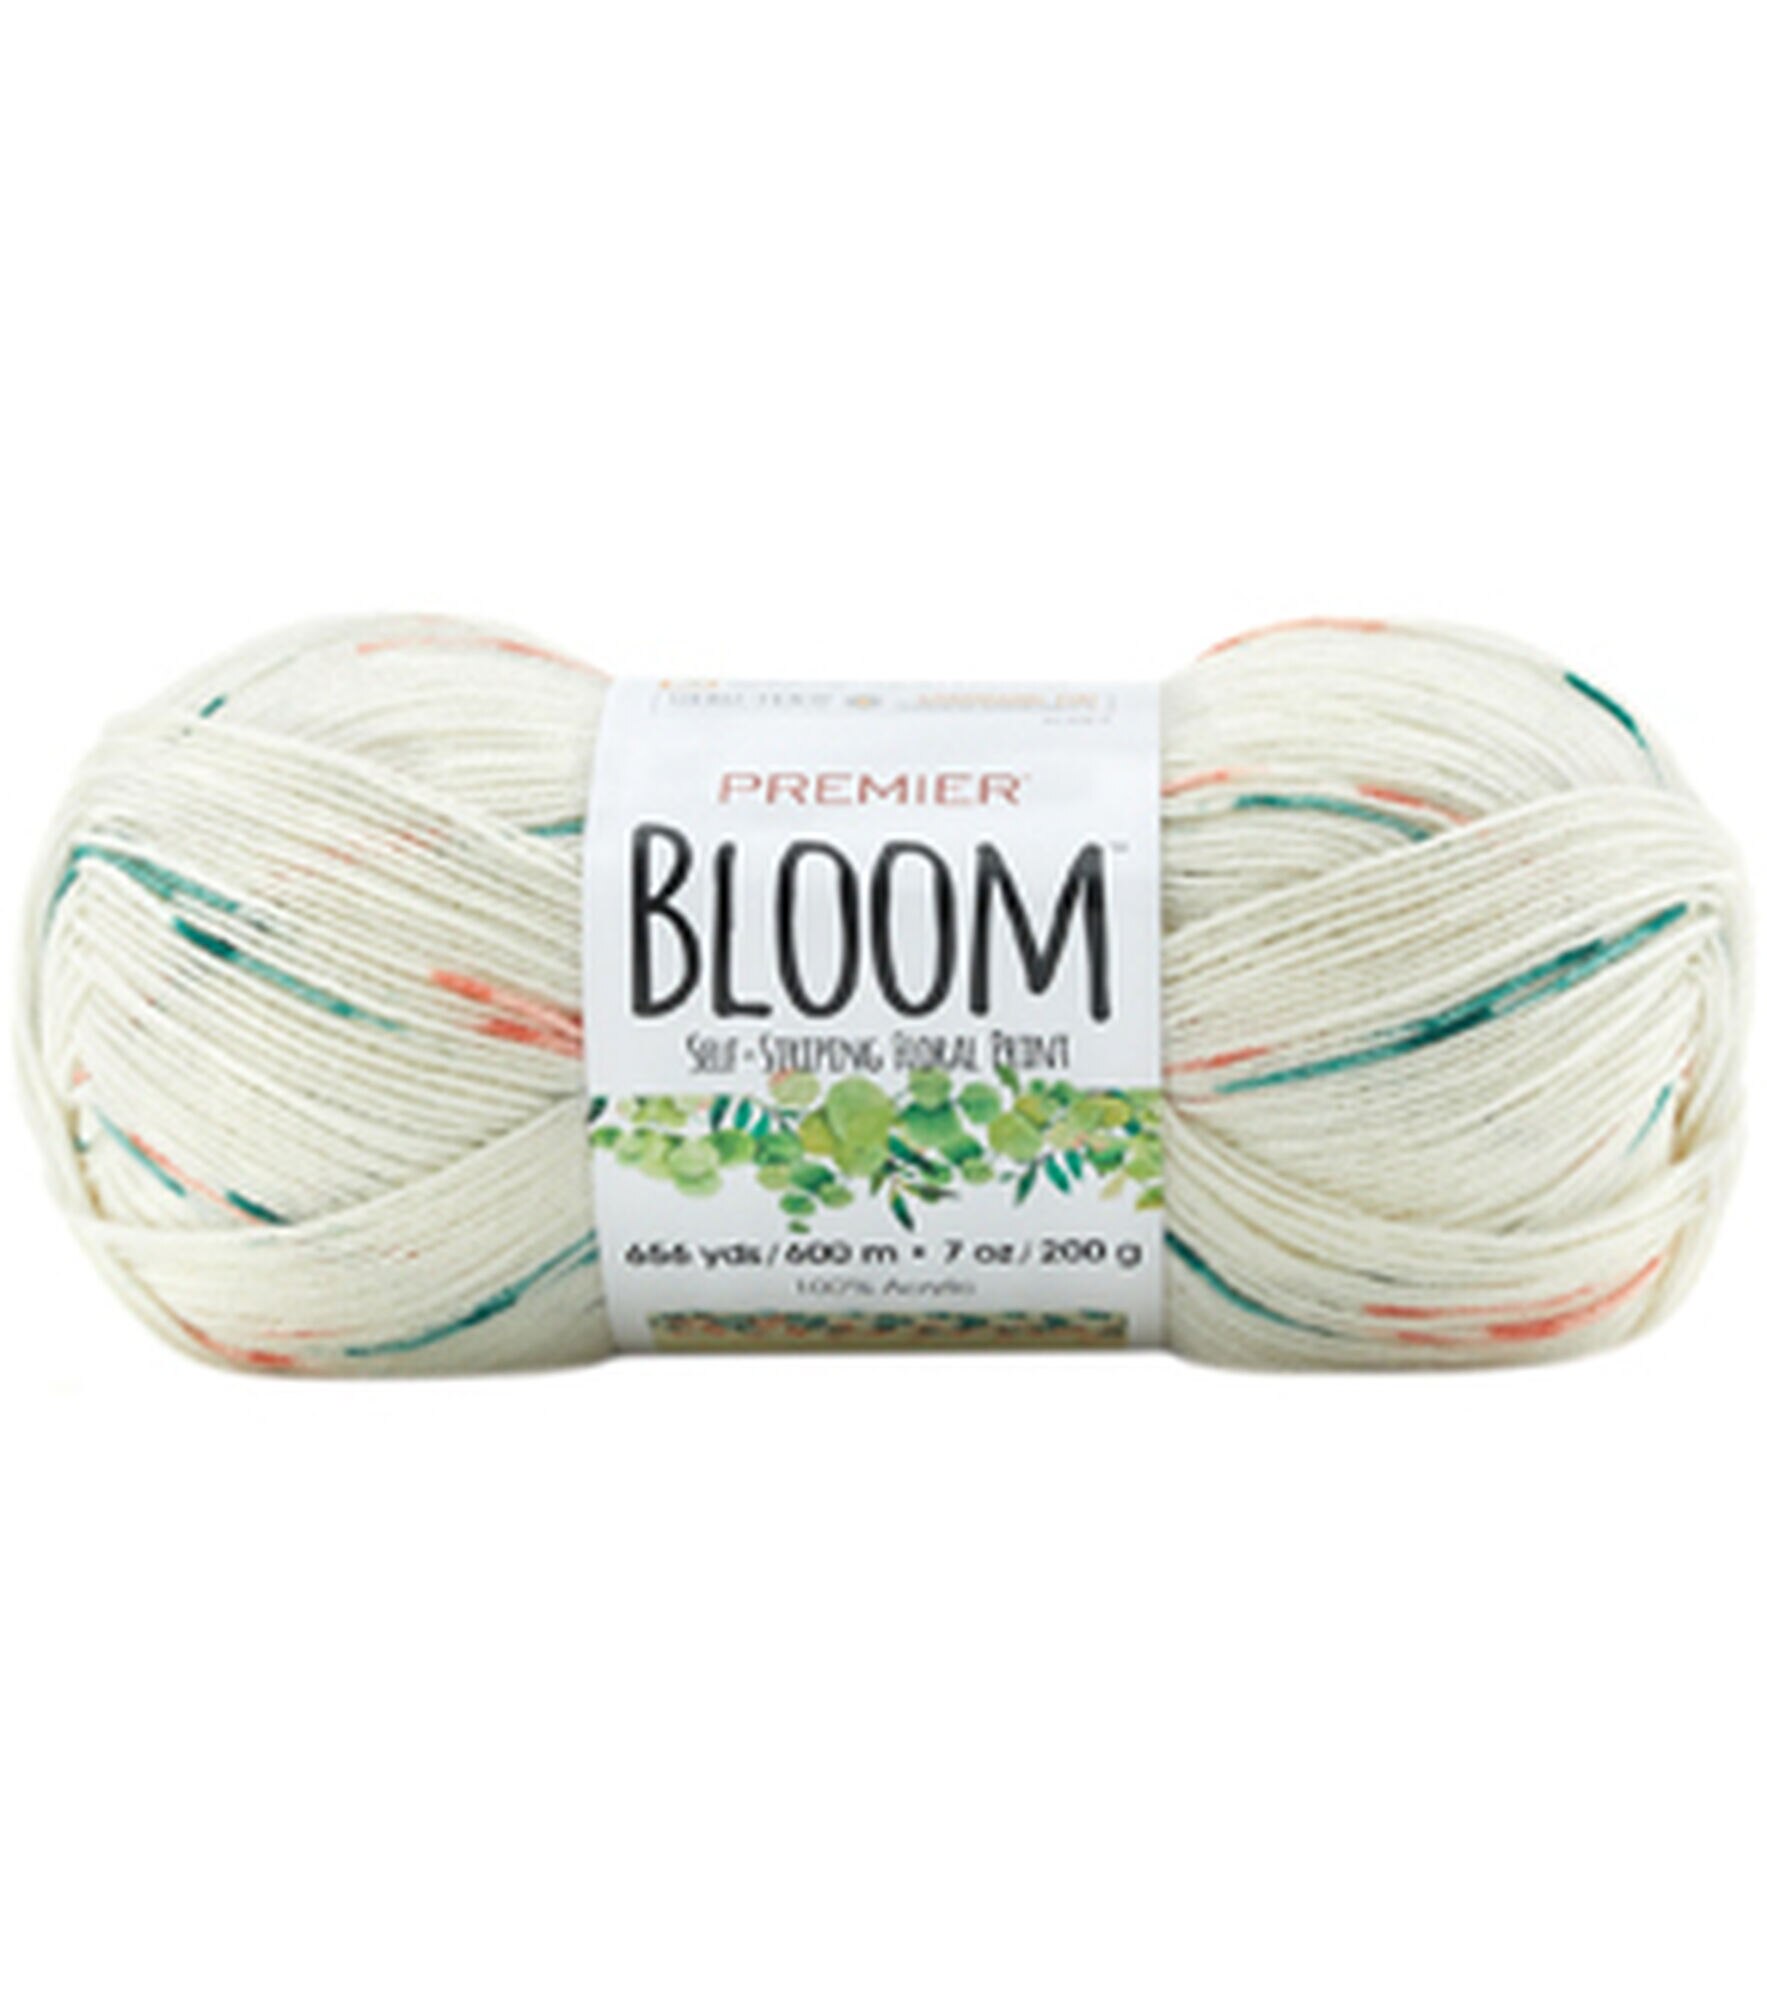 Premier Bloom® Chunky – Premier Yarns